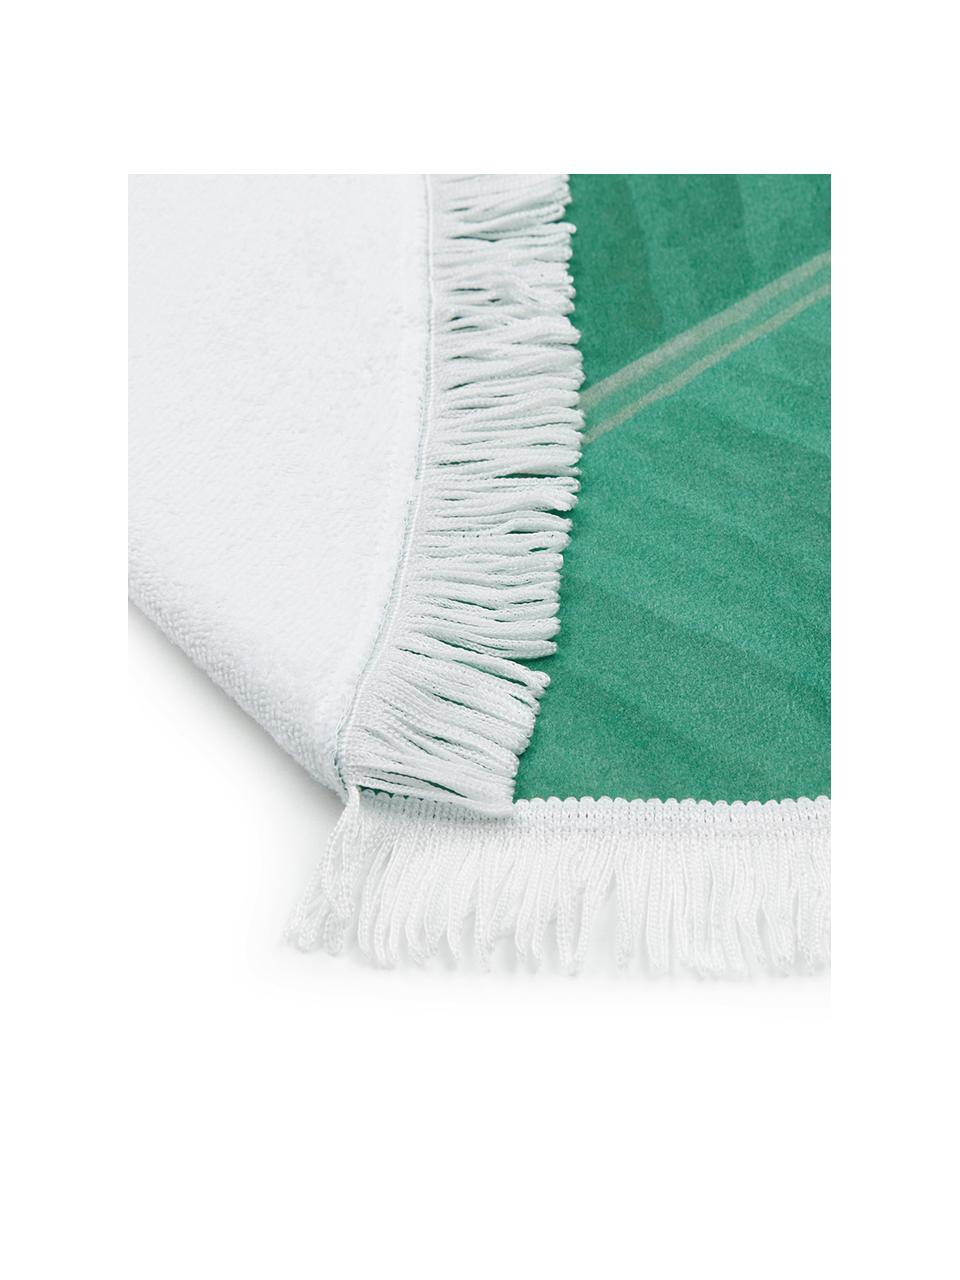 Okrągły ręcznik plażowy Banan, 55% poliester, 45% bawełna
Bardzo niska gramatura 340 g/m², Zielony, biały, Ø 150 cm